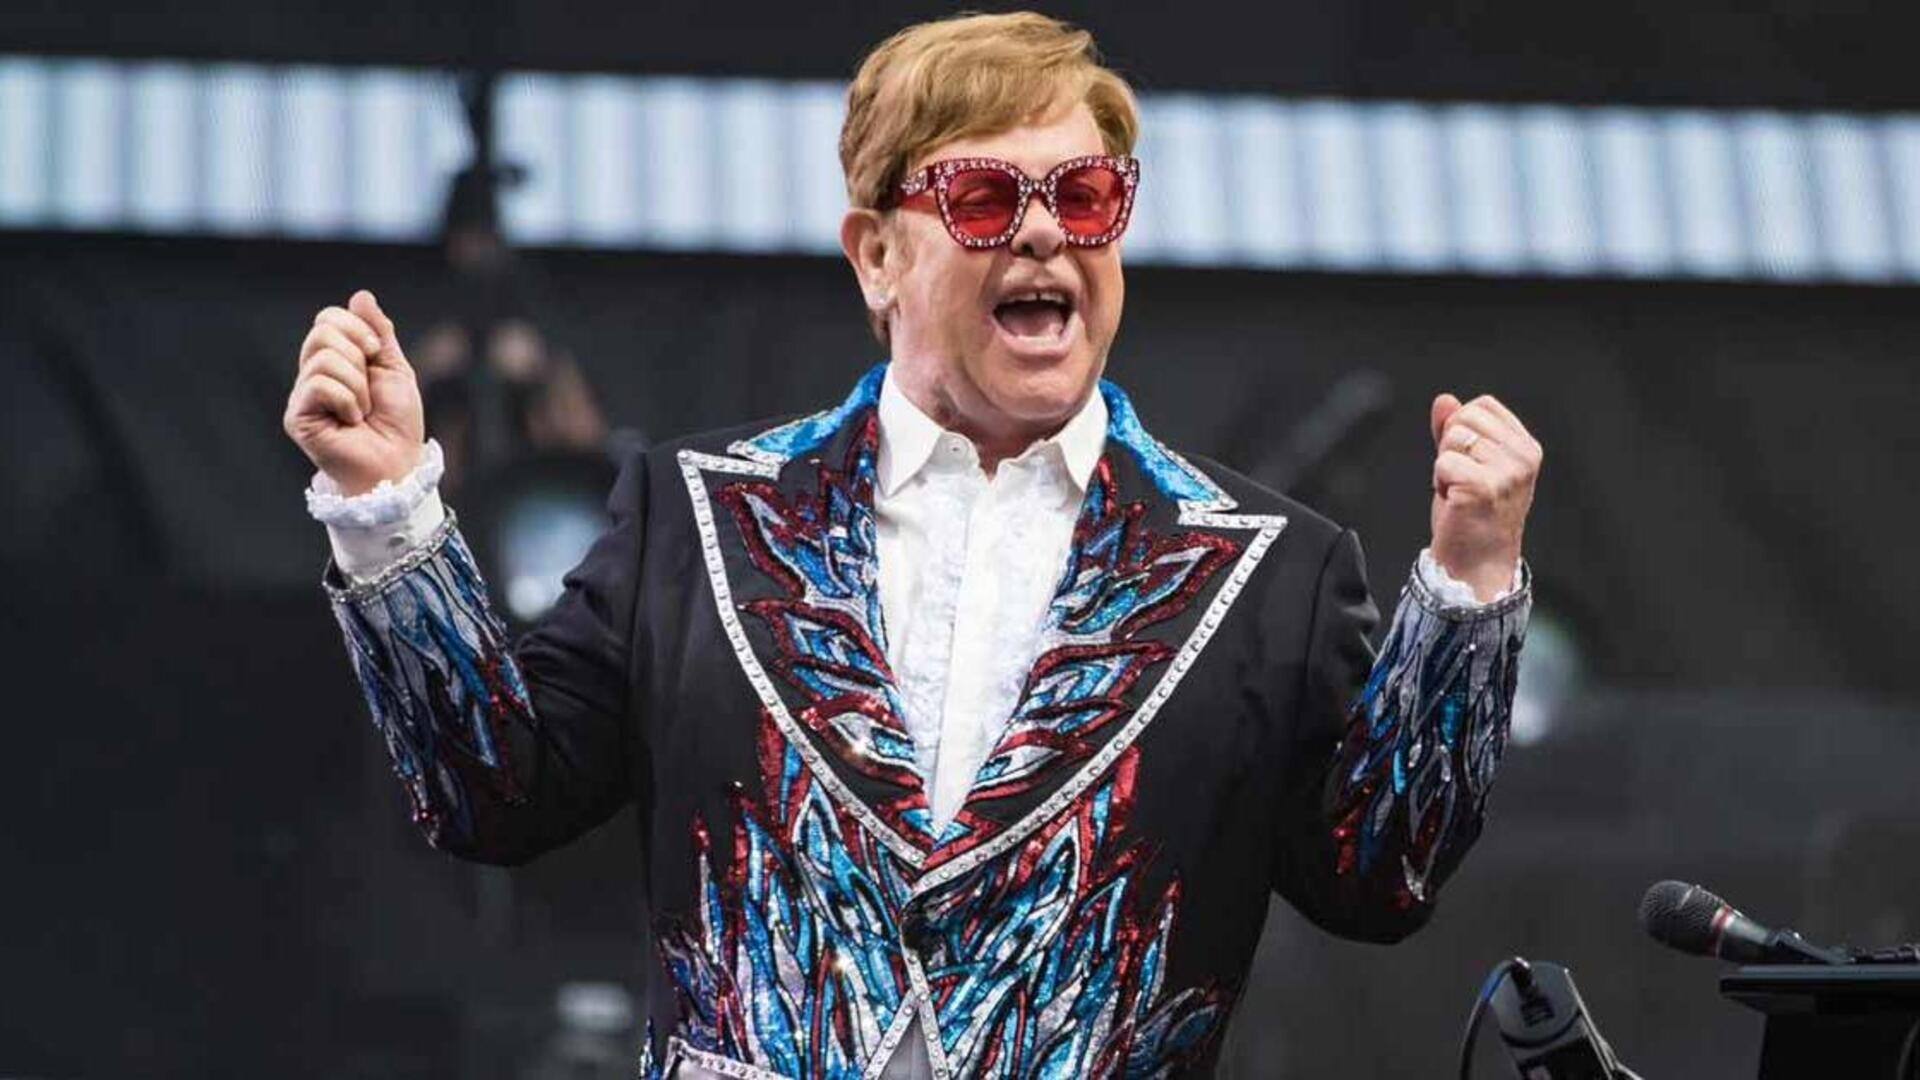 EGOT winner Elton John's biggest hits